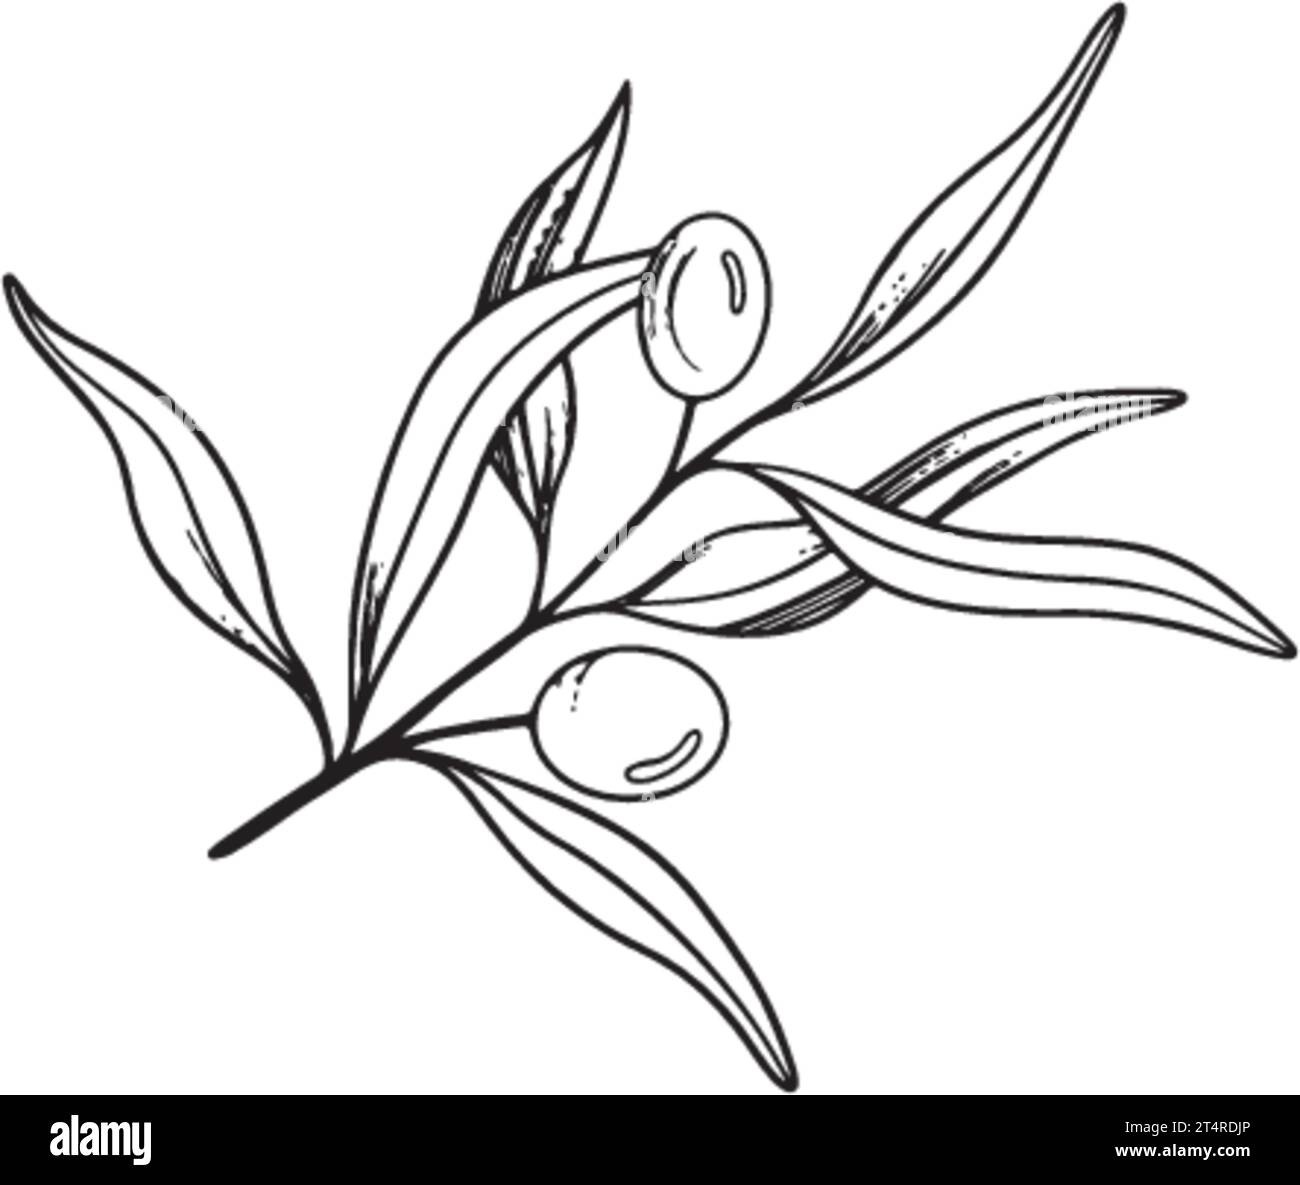 Bozzetto di rametto di ulivo con bacche e foglie. Illustrazione grafica vettoriale disegnata a mano. Disegno in bianco e nero del simbolo dell'Italia o greco per Illustrazione Vettoriale